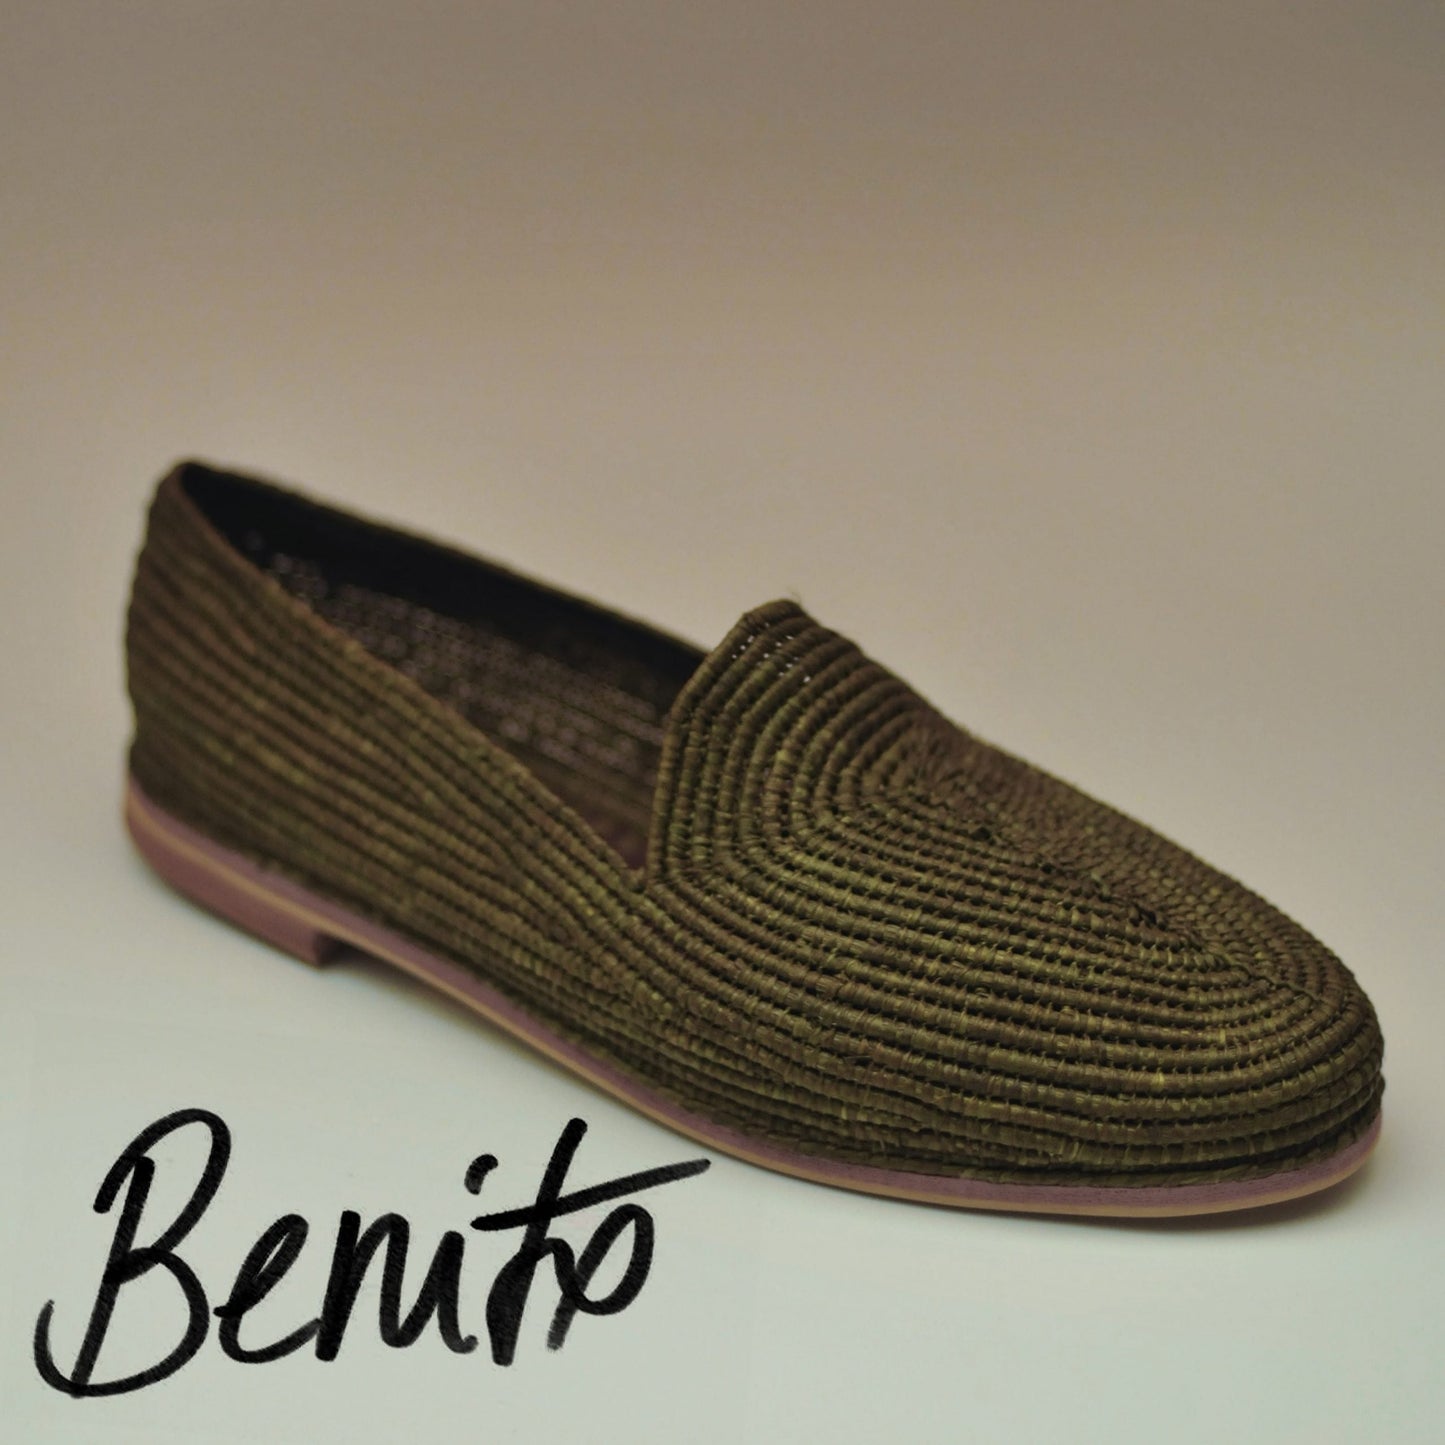 Zapato Benito